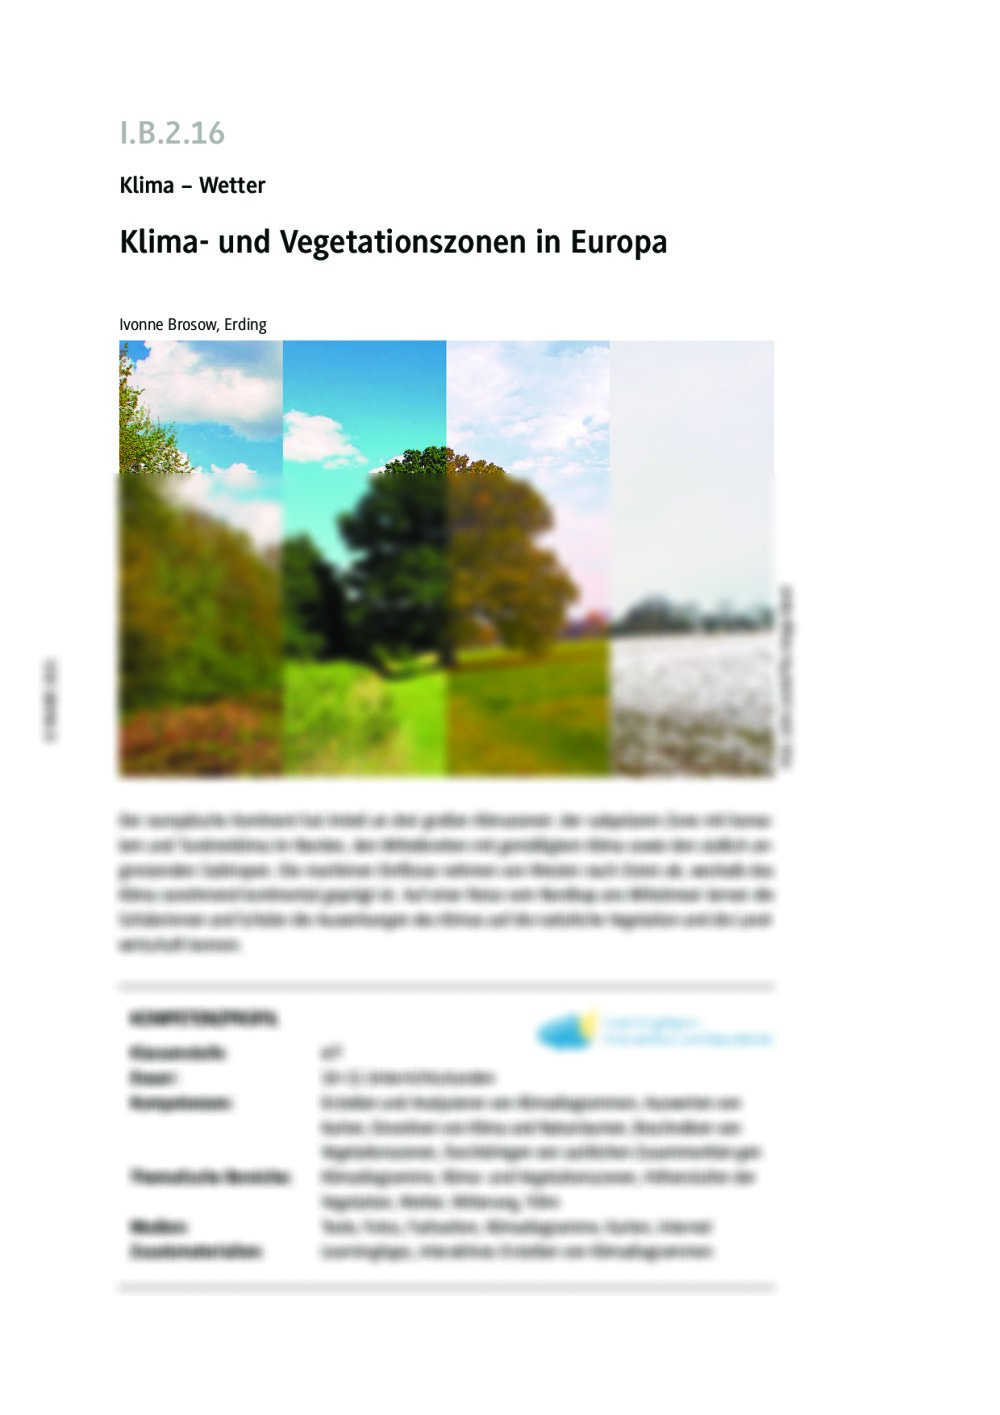 Klimazonen & Vegetation in Europa Klasse 6 und 7 - Seite 1